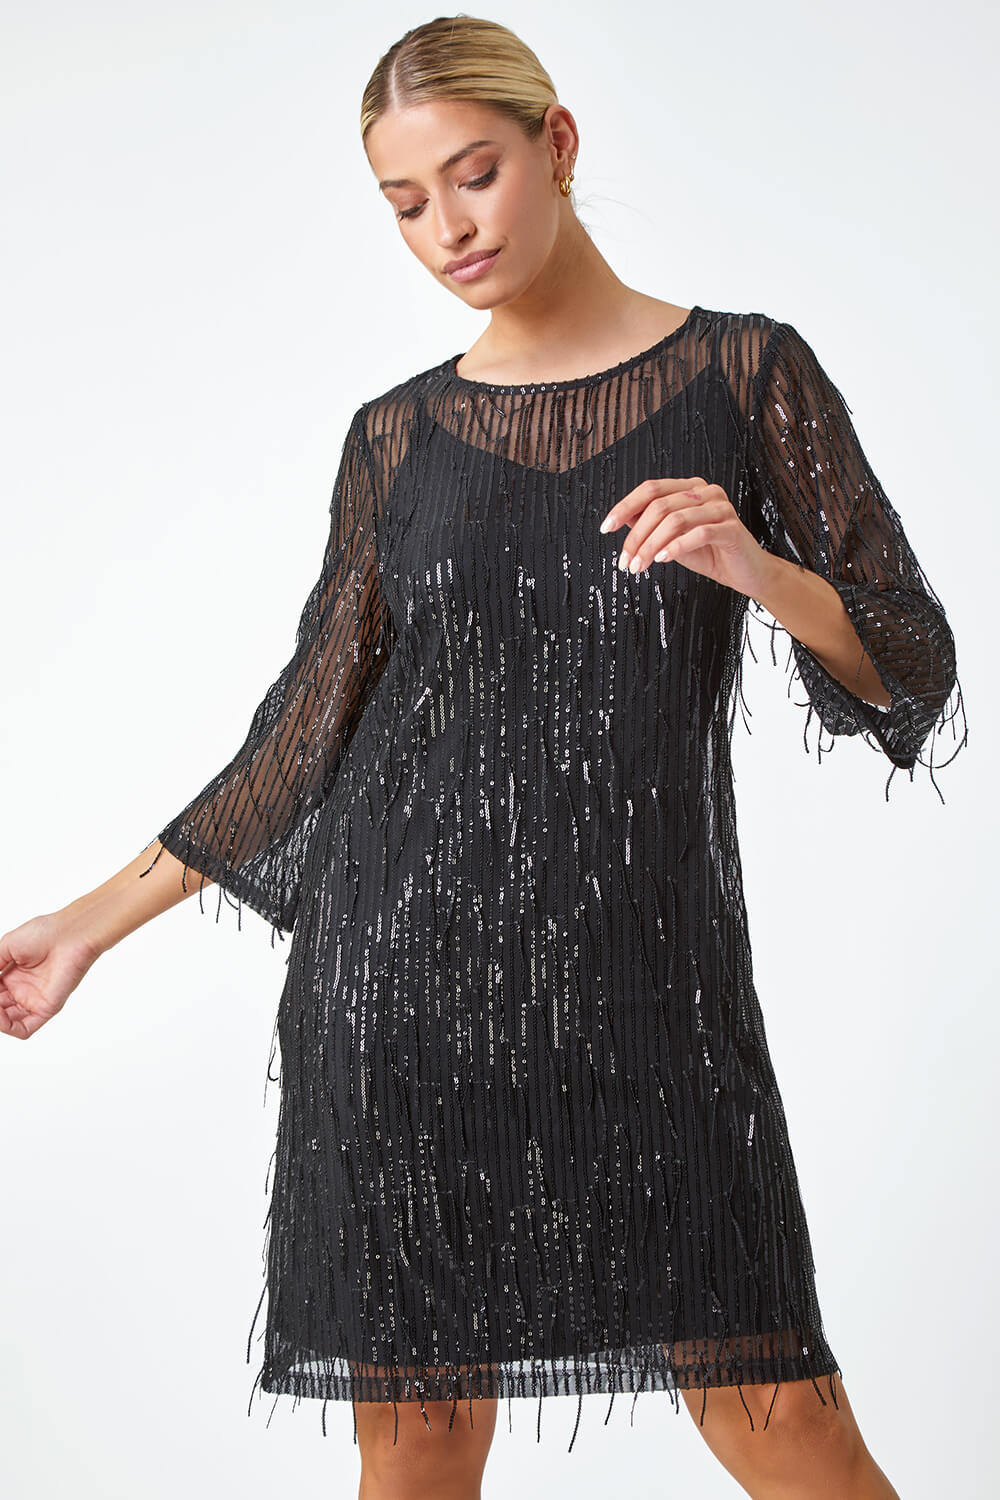 Black Sequin Sparkle Tassel Shift Dress, Image 2 of 5